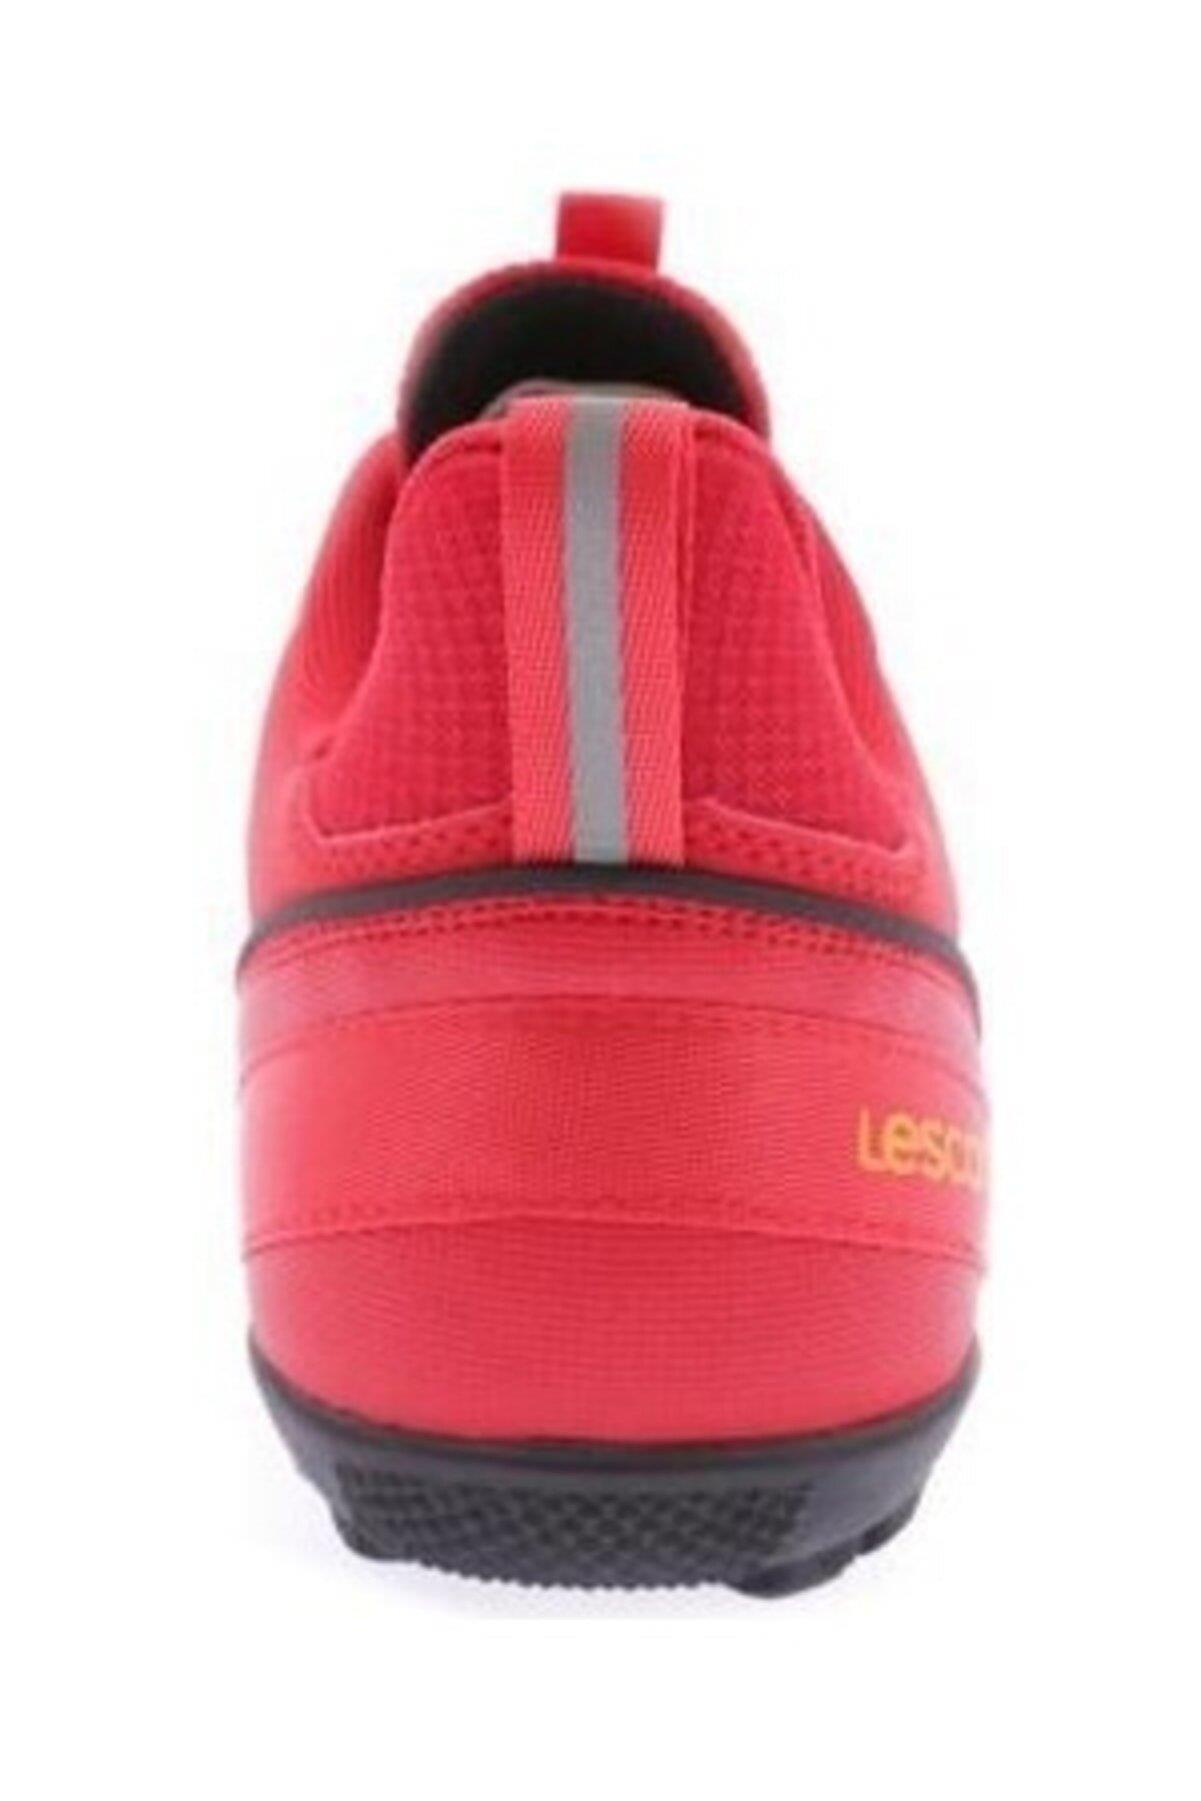 Lescon Attack2-001 H-22B Kırmızı Erkek Halısaha Futbol Ayakkabı